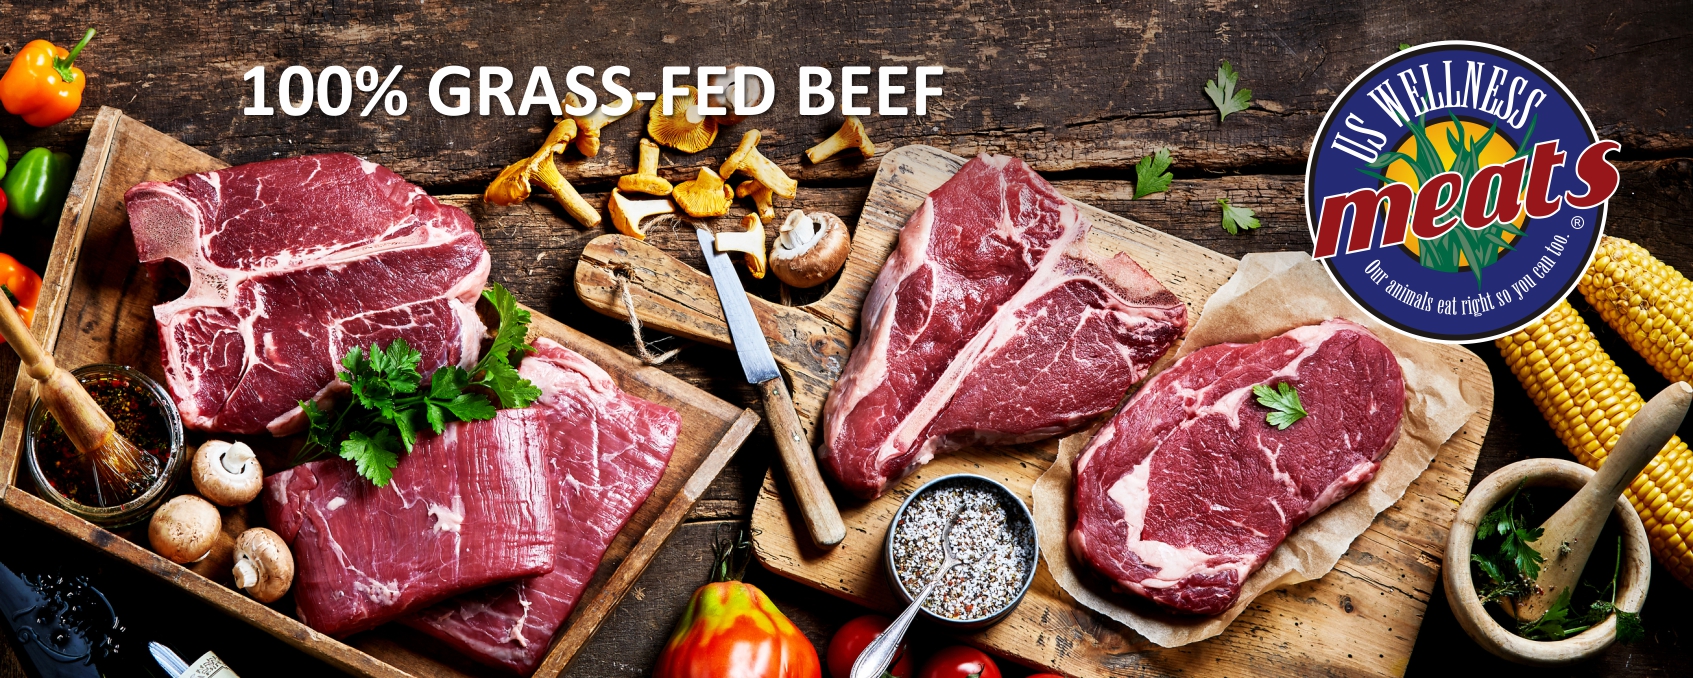 grassfed beef, pasture raised meats